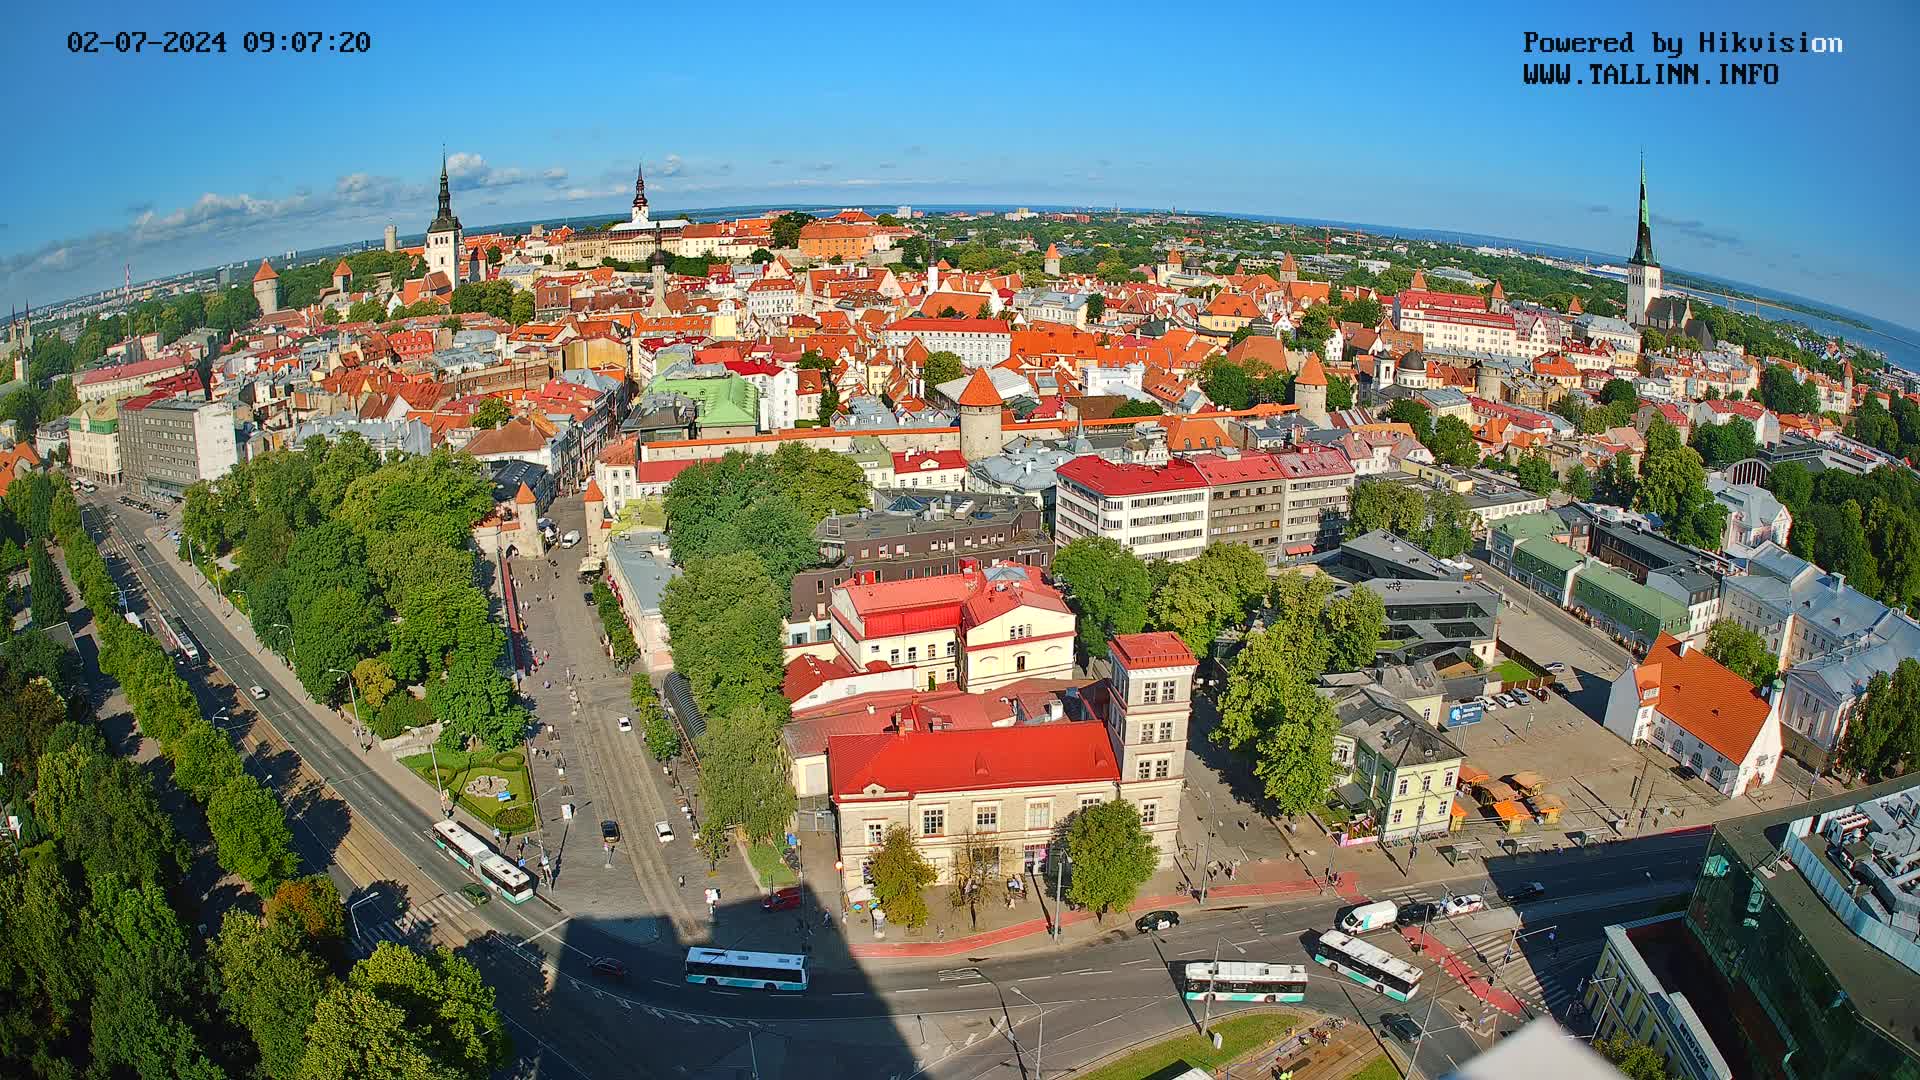 Tallinn Ma. 09:34